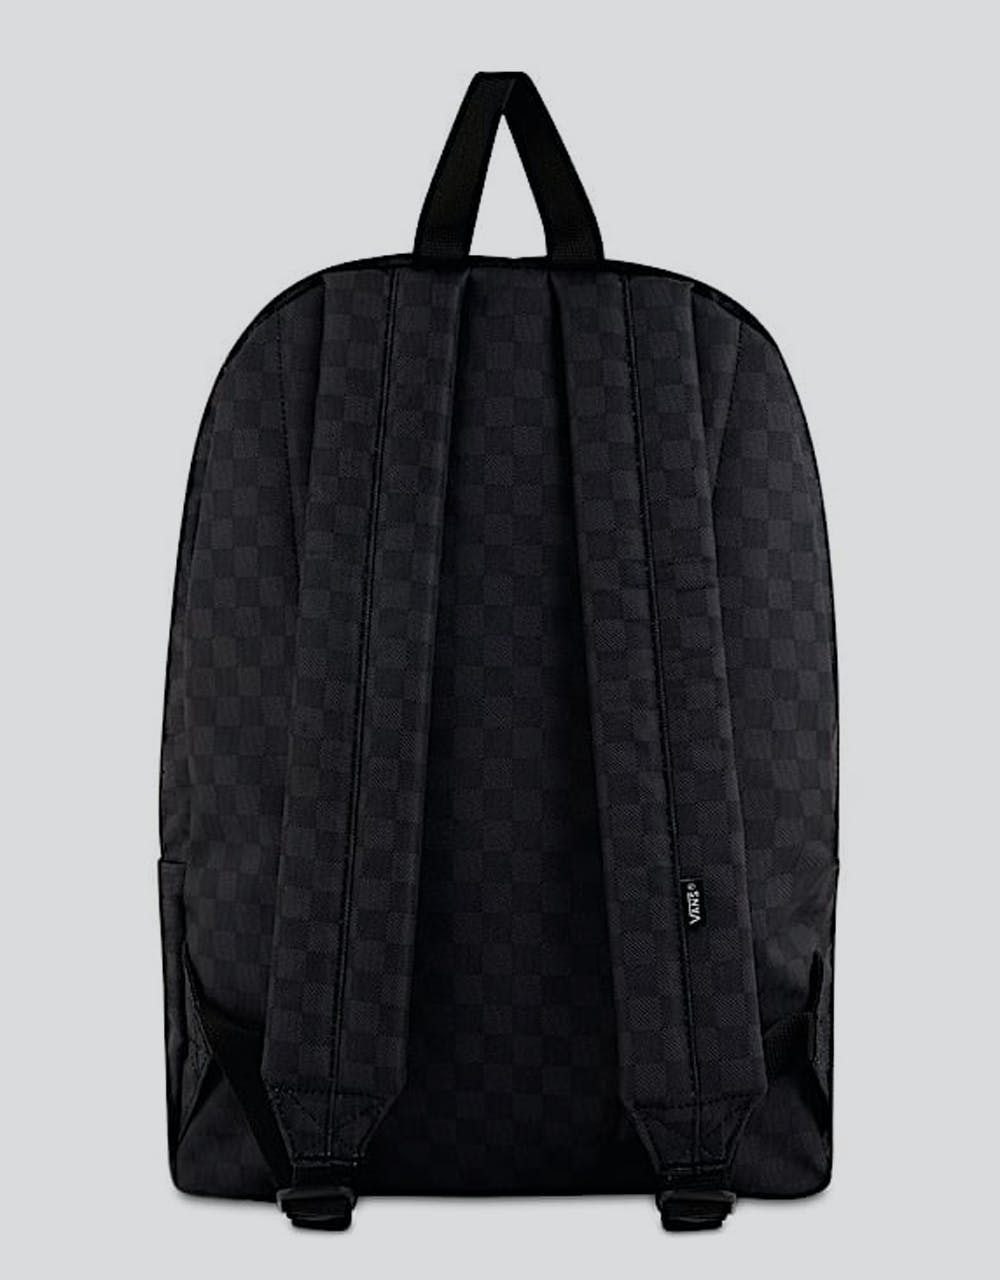 Vans Old Skool II Backpack - Black/Charcoal